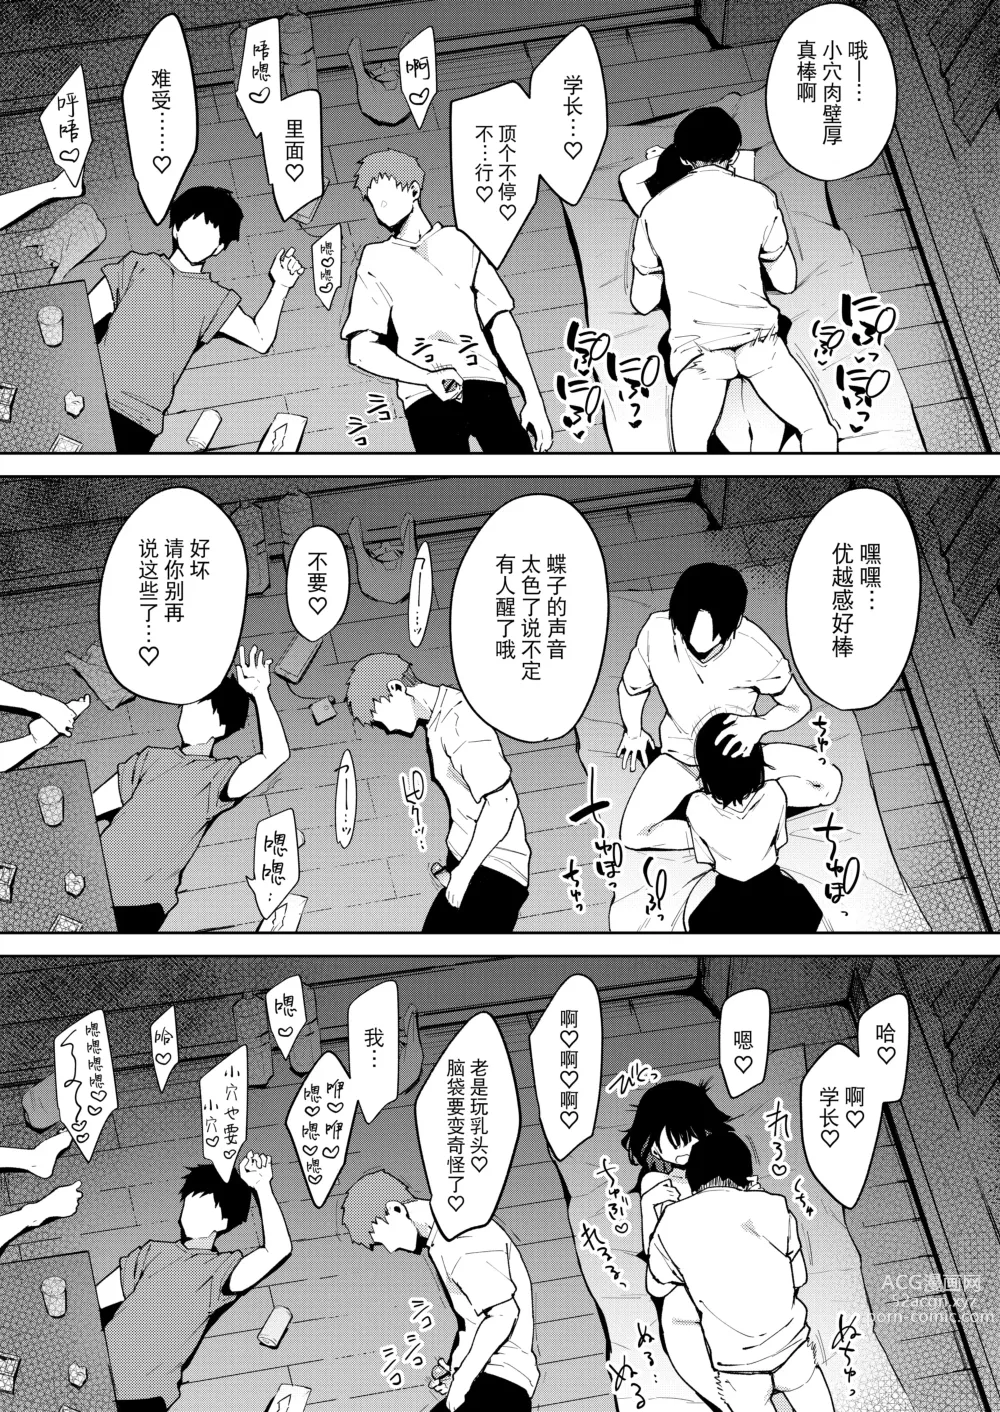 Page 177 of doujinshi Chouko I-V